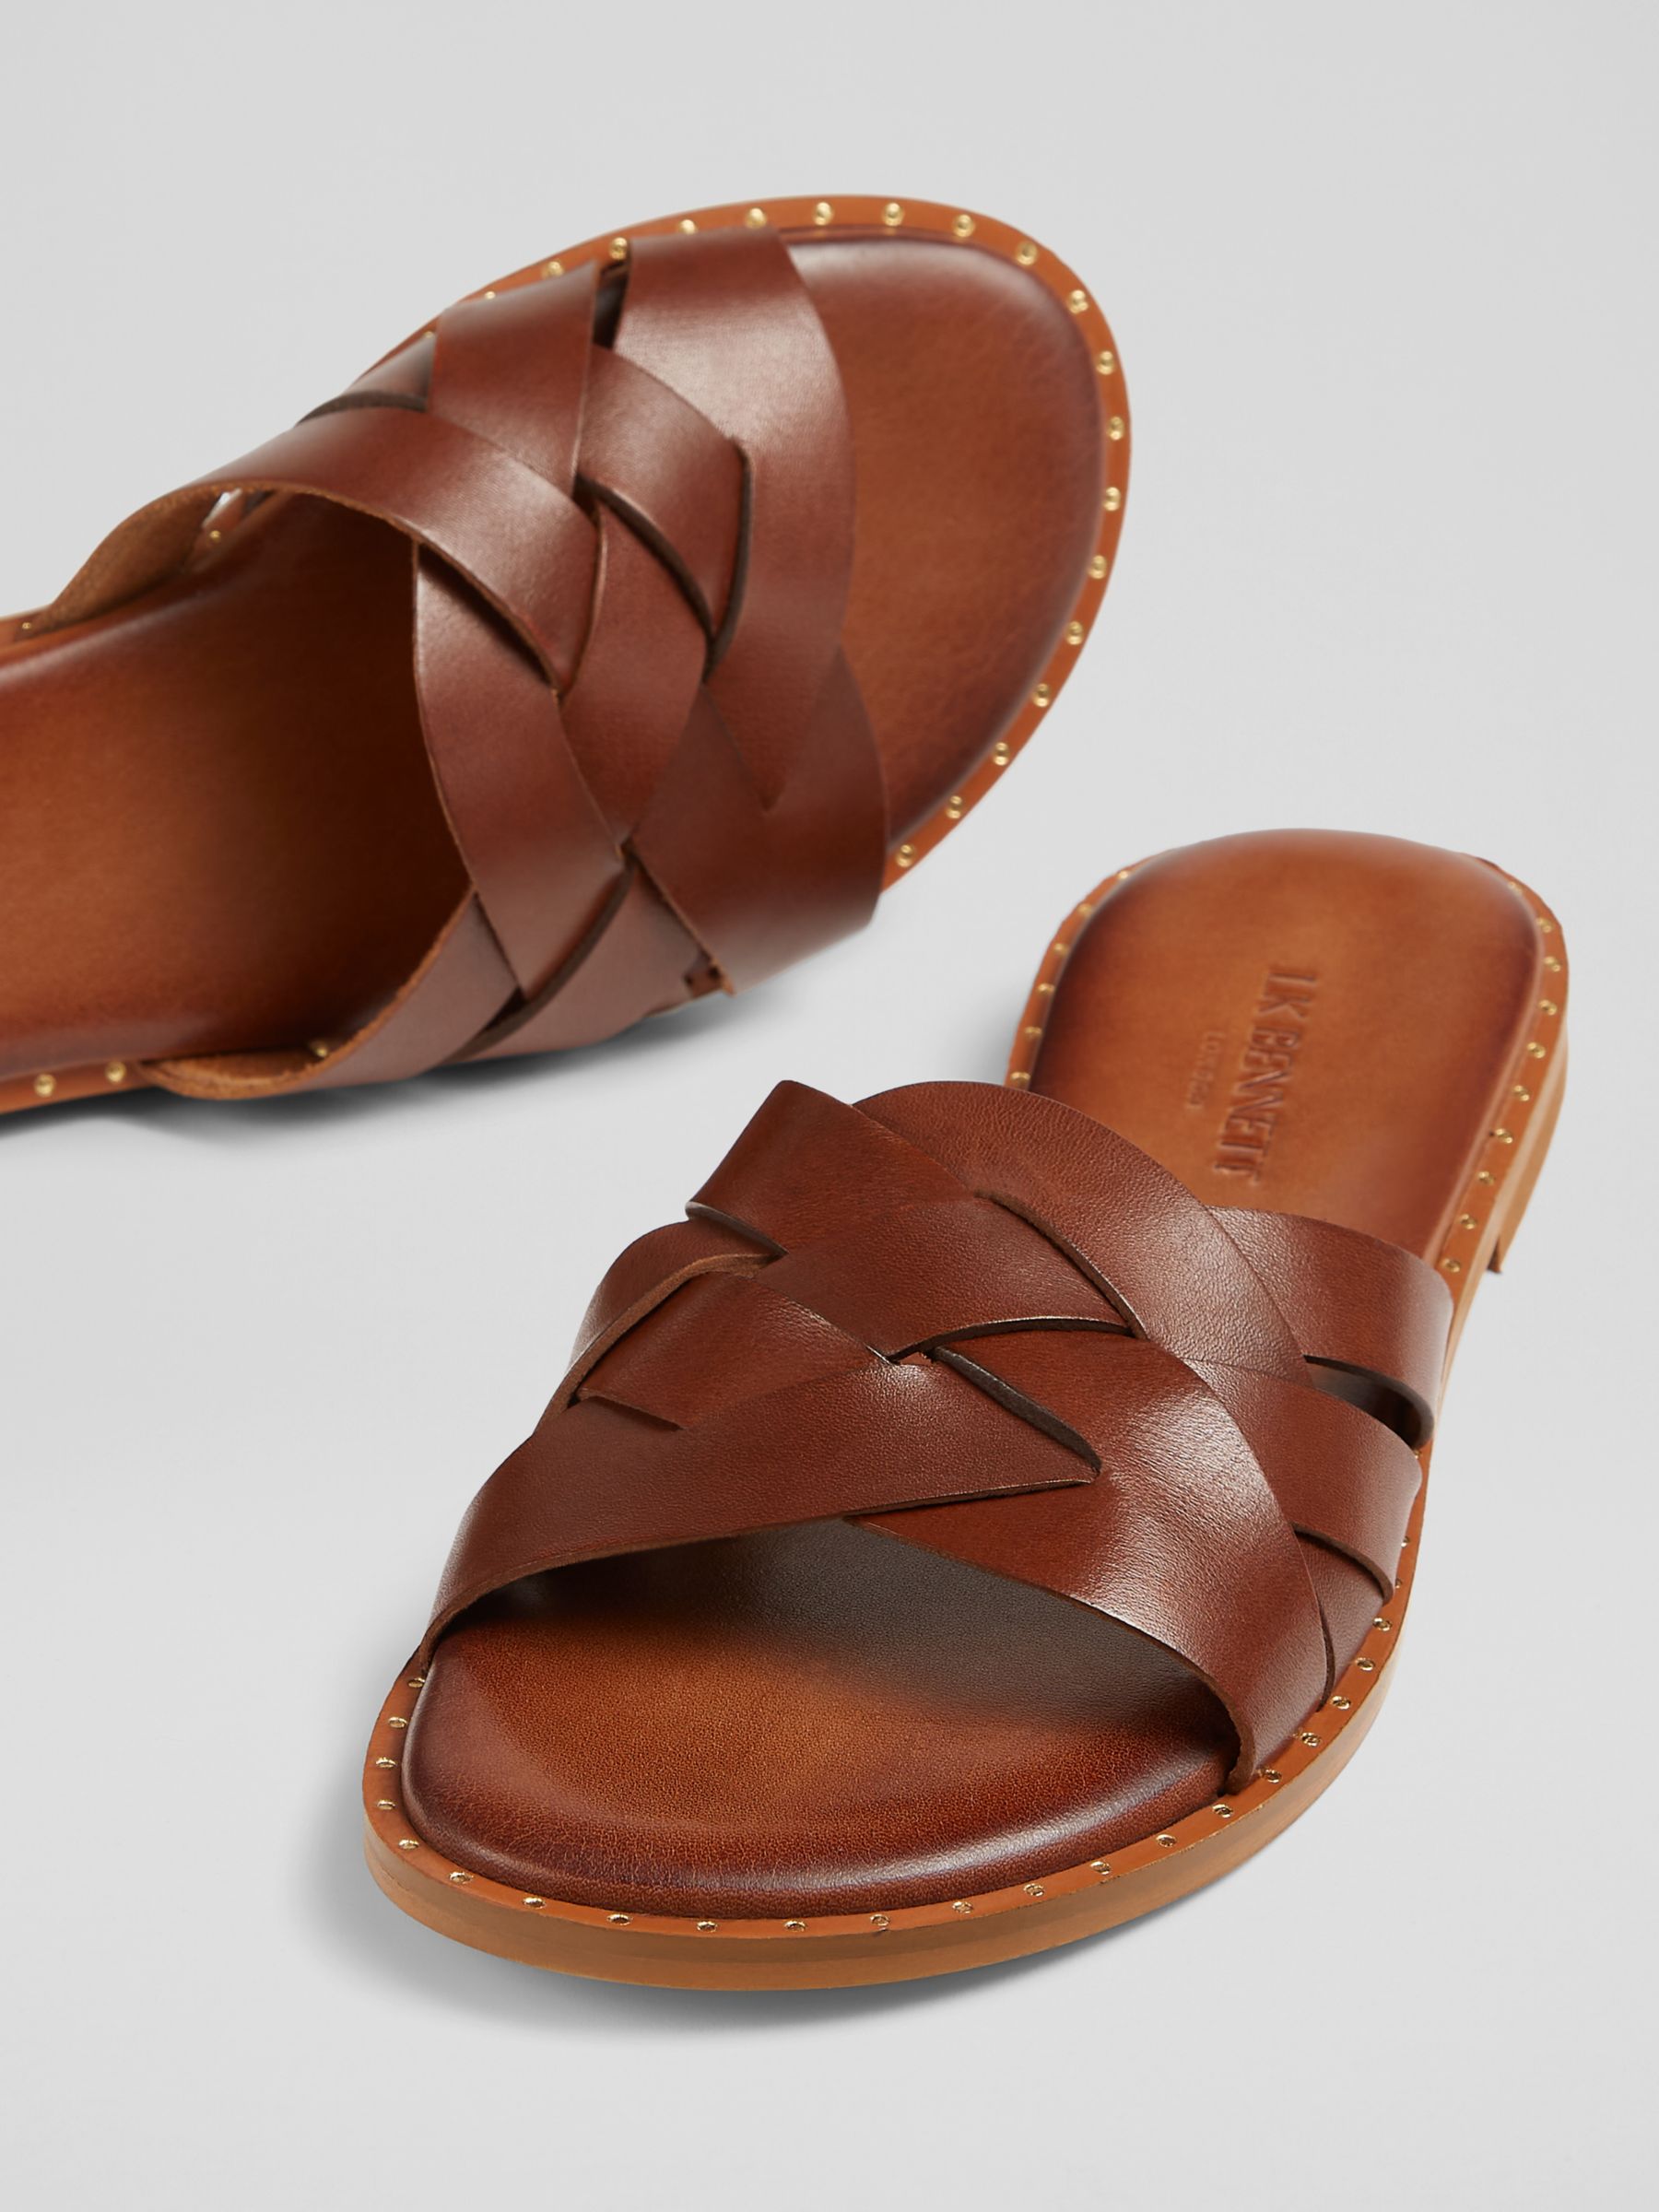 L.K.Bennett Amara Leather Flat Sandals, Tan, 4